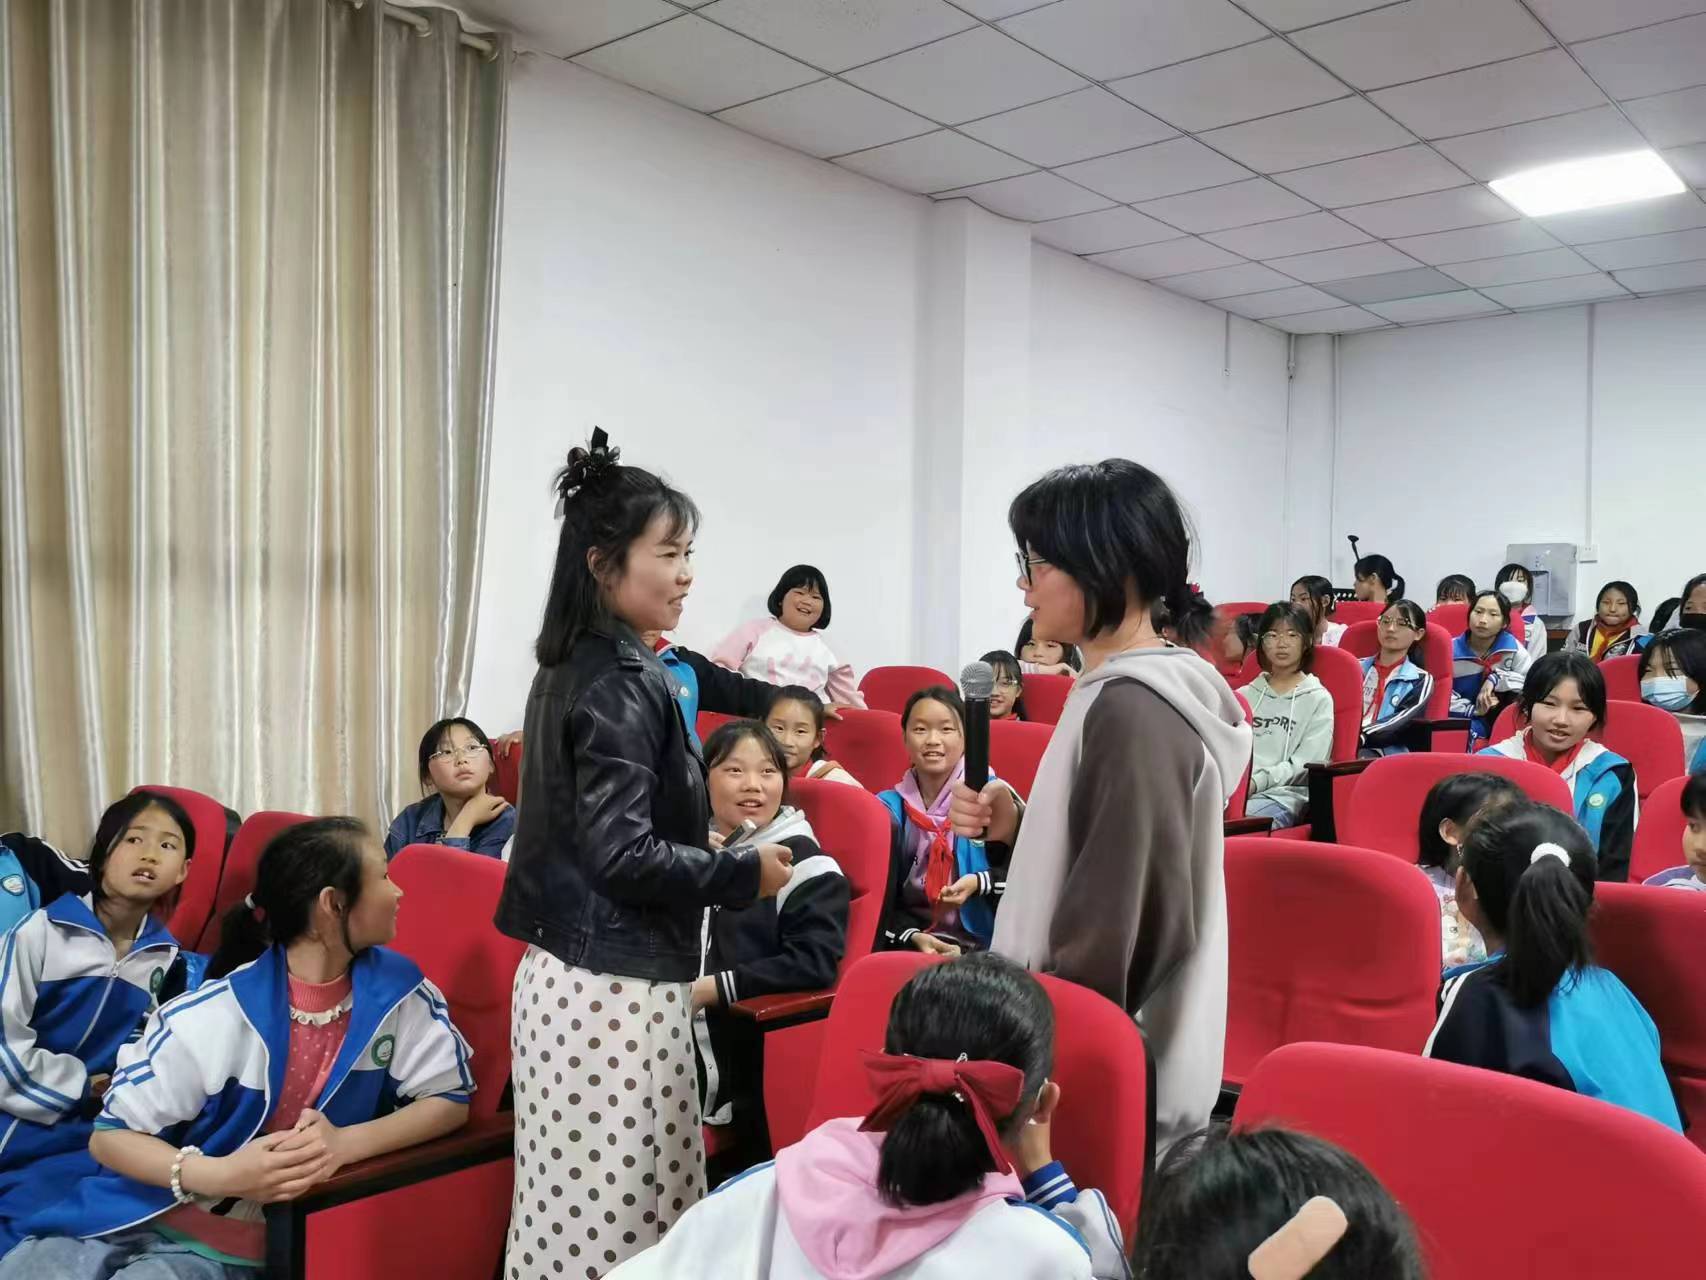 静待花开 让青春不迷茫 --－汉阴县双乳镇中心小学开展女生青春期健康教育讲座